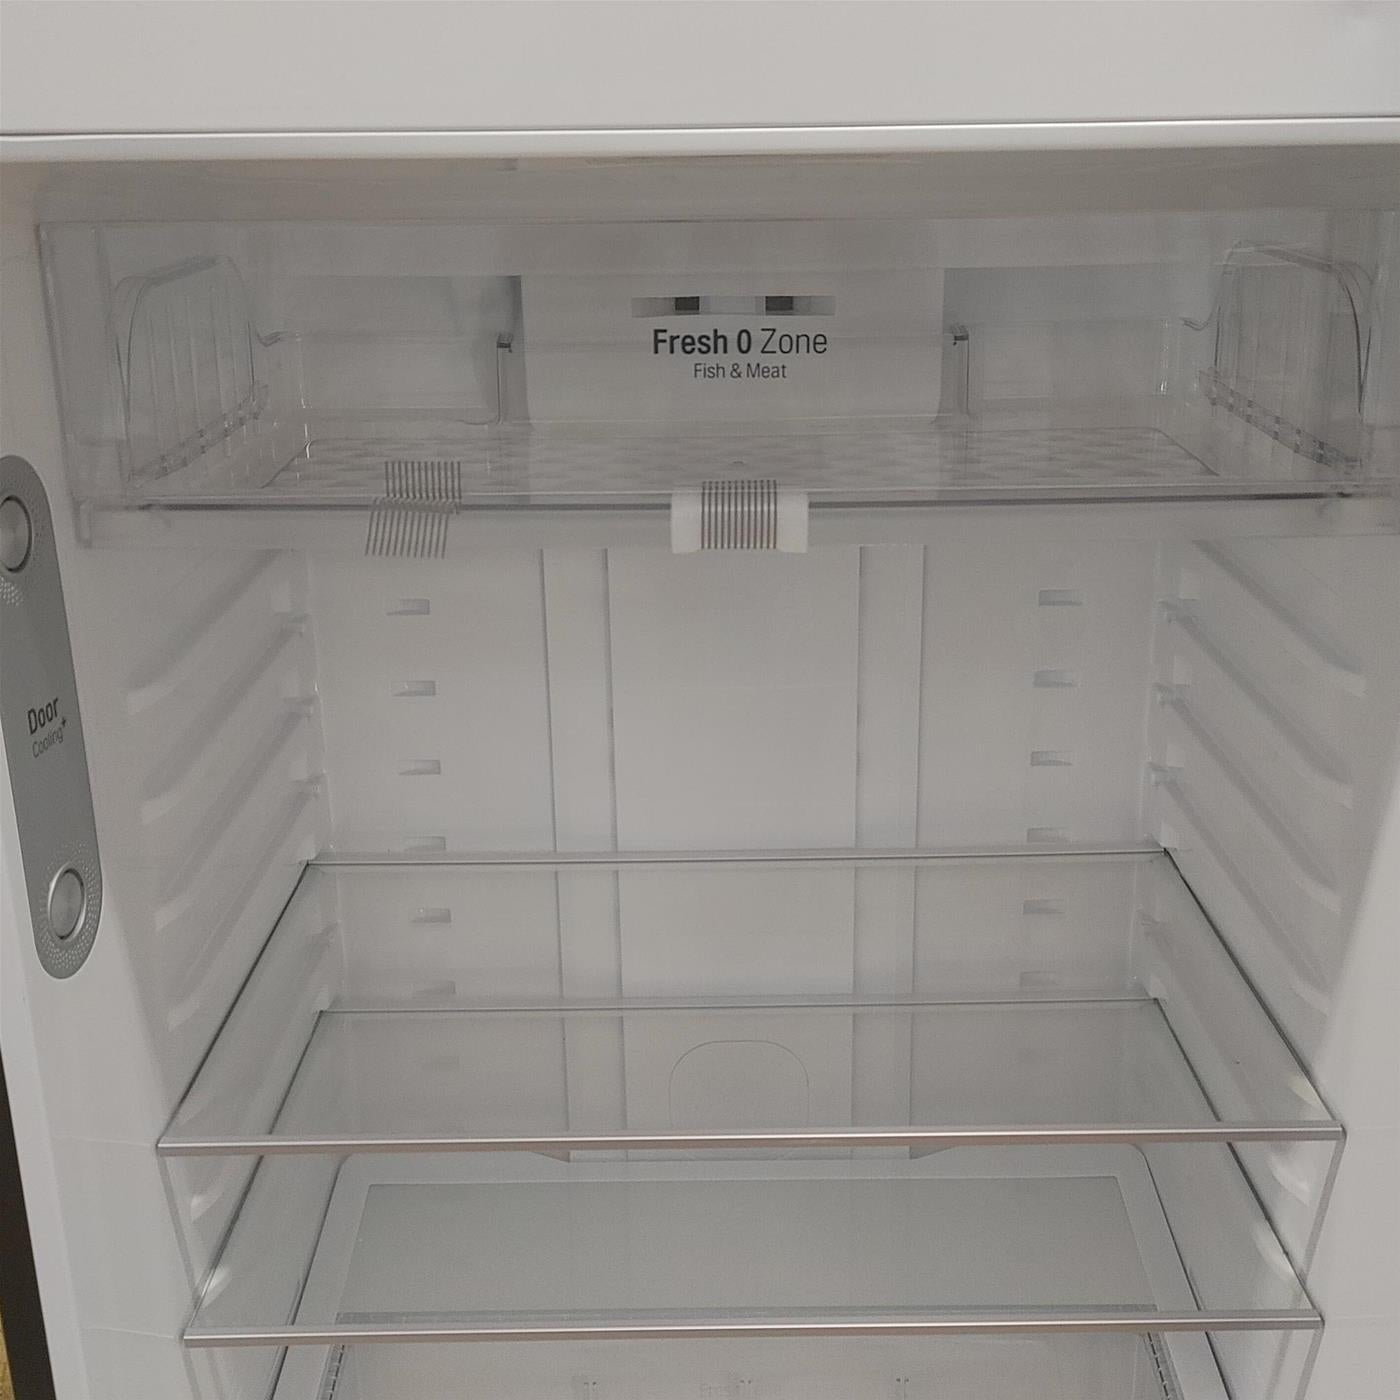 LG GTF744BLPZD frigorifero con congelatore Libera installazione 509 L E Nero